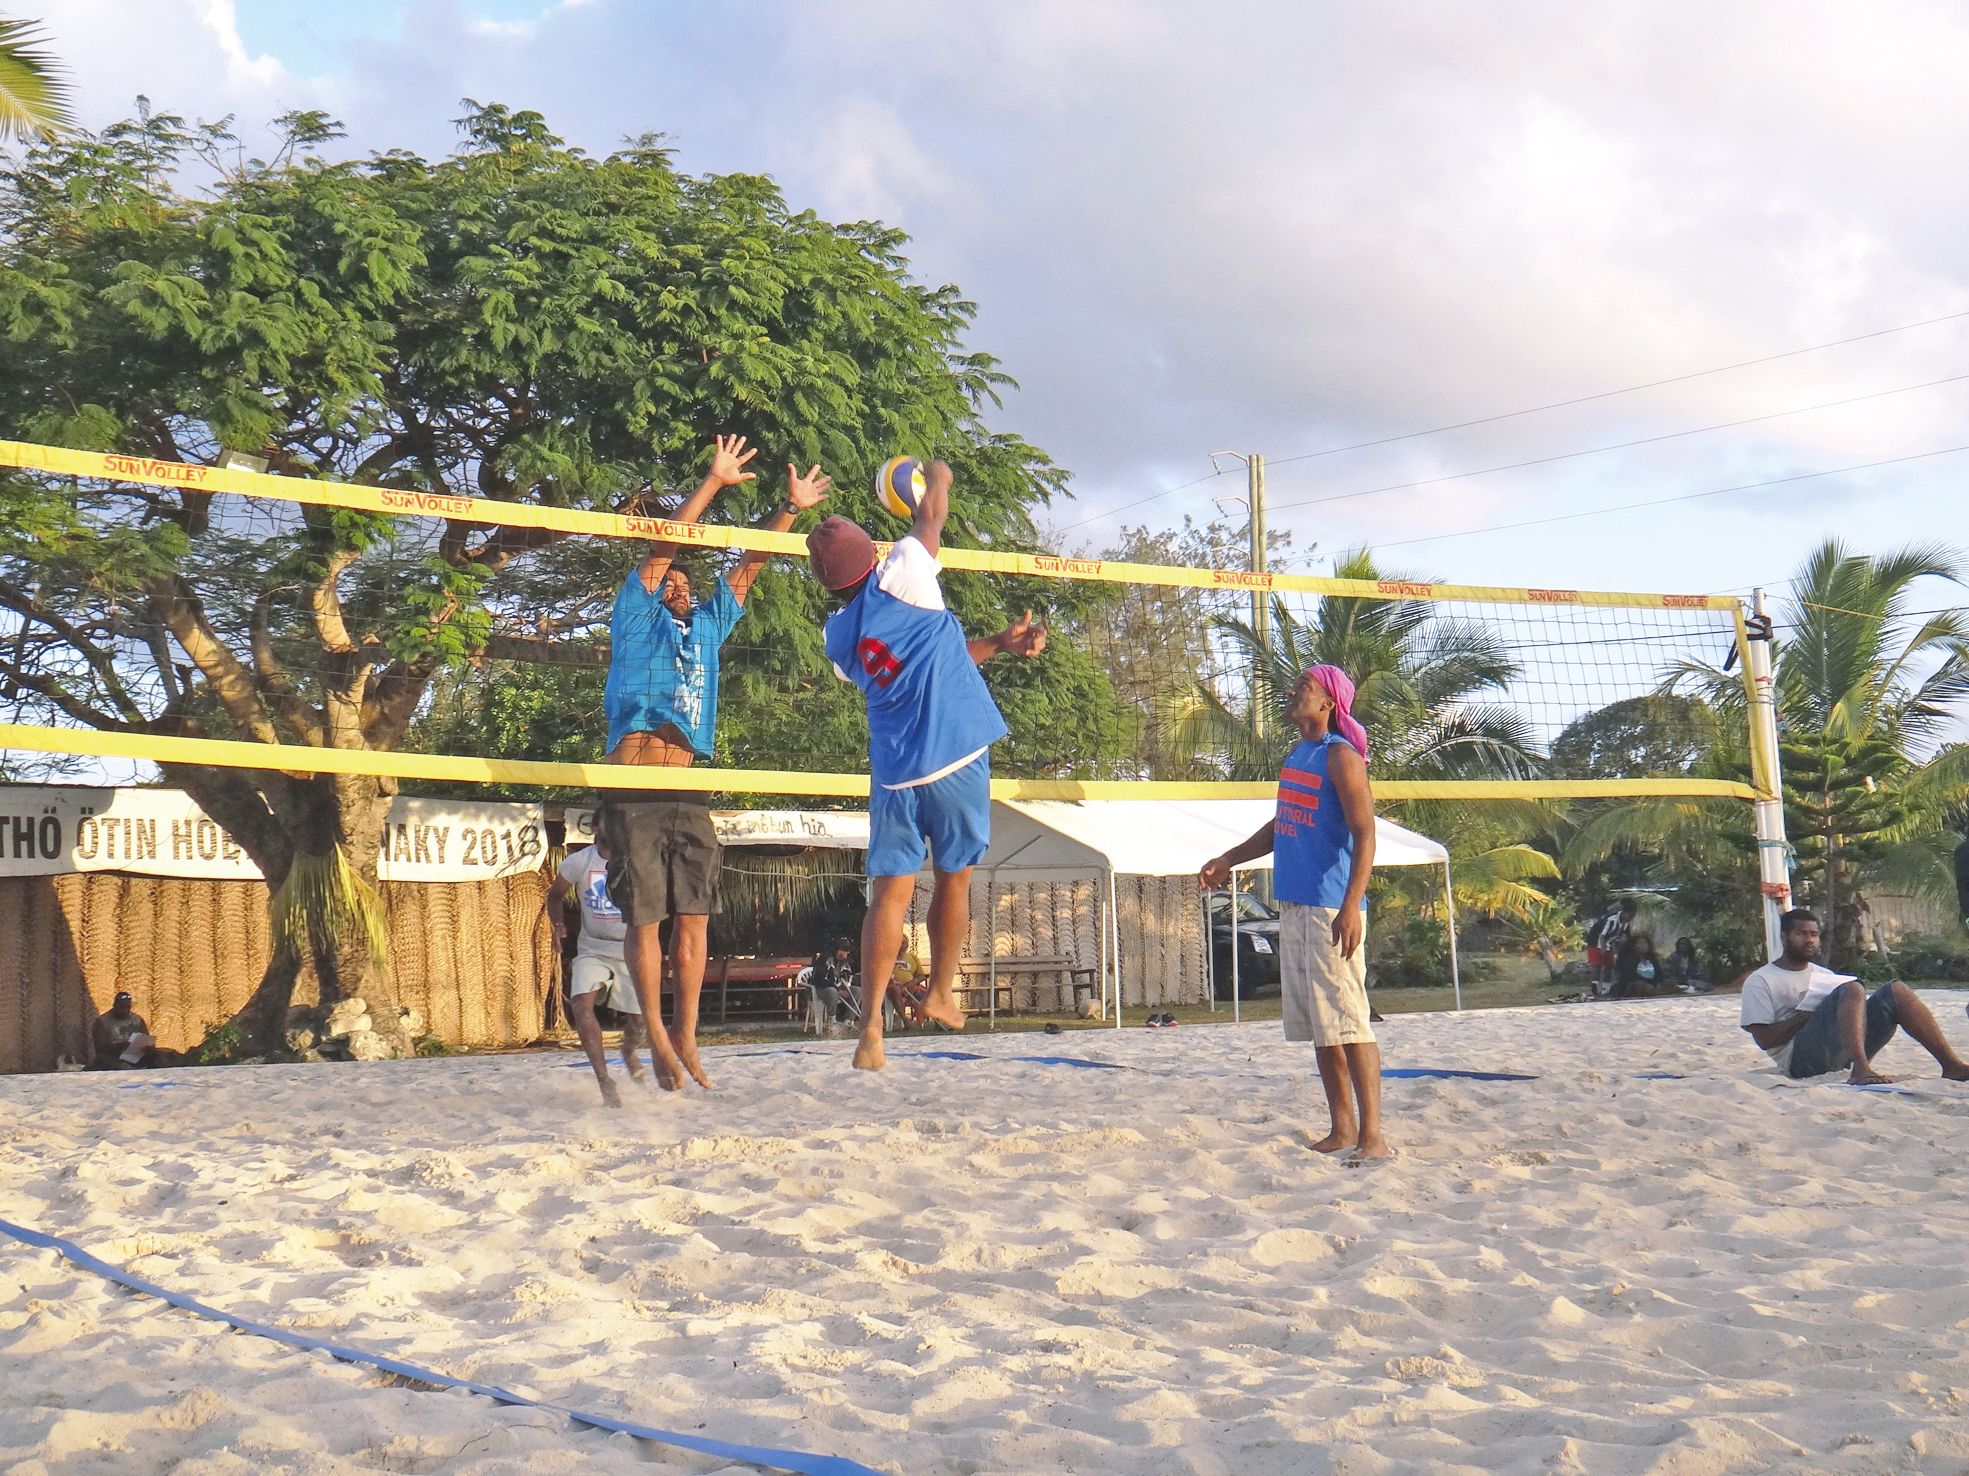 Le premier tournoi de beach-volley était destiné à qualifier les meilleures paires aux finales territoriales.